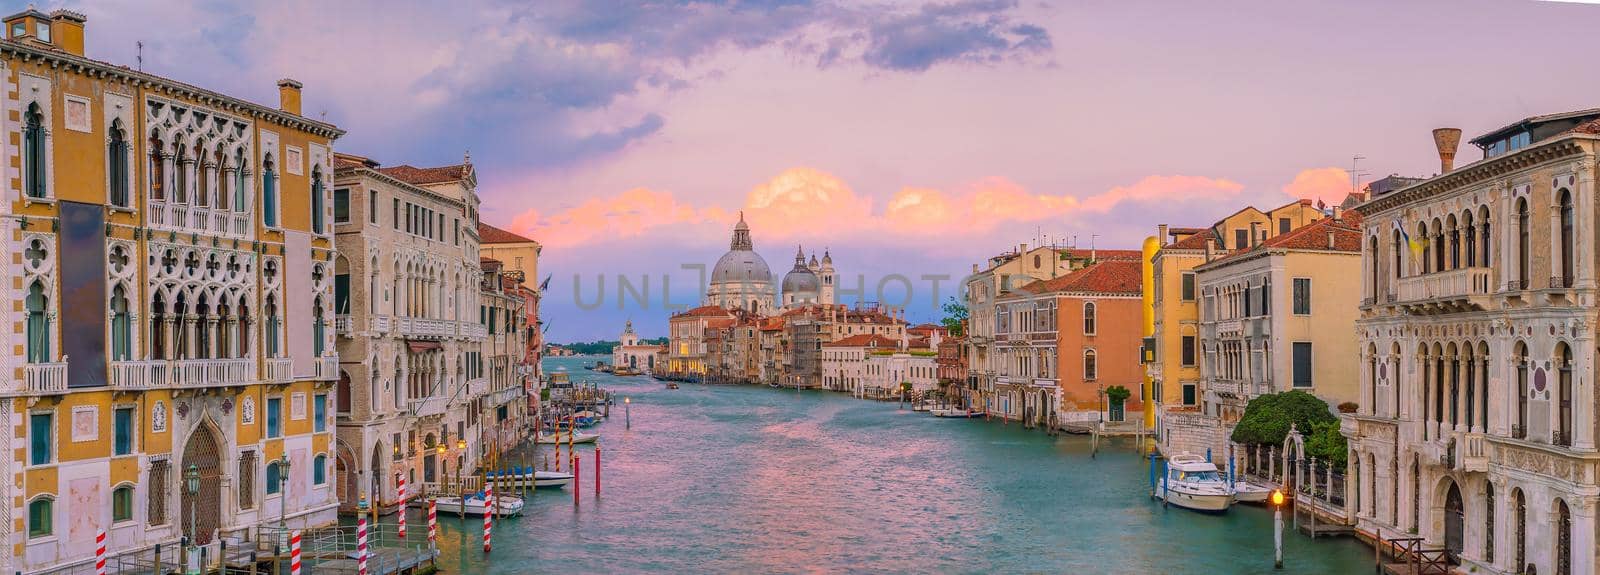 Grand Canal in Venice, Italy with Santa Maria della Salute Basilica by f11photo